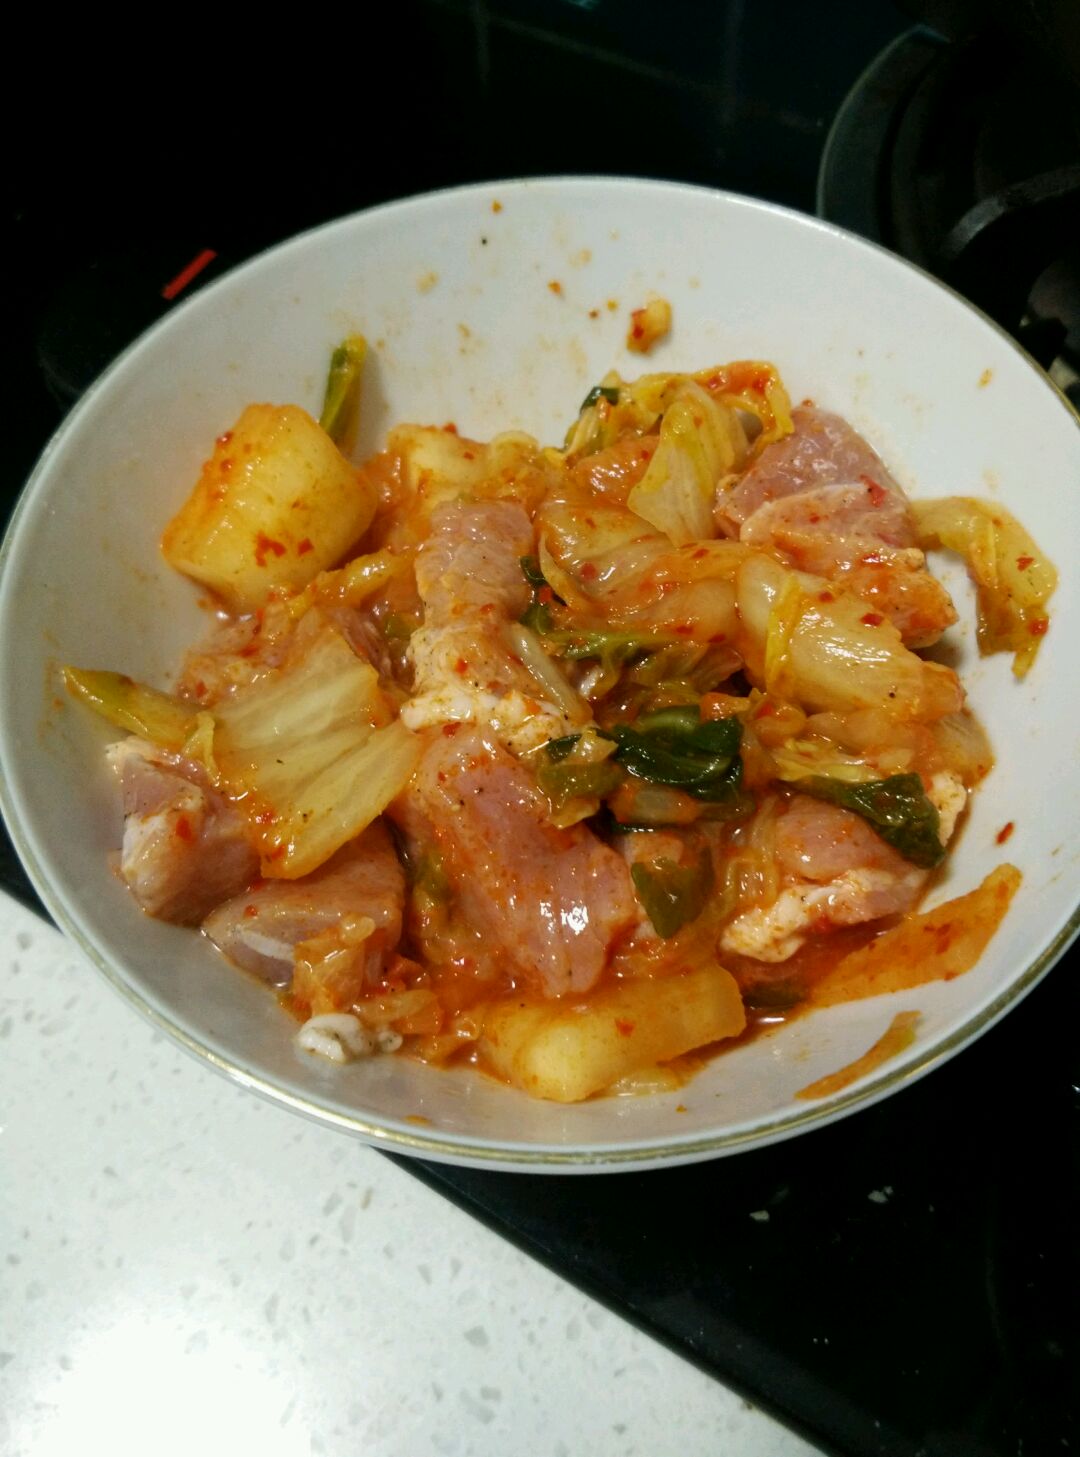 韓式泡菜炒肉(2人份) - DiDi Chang 2013/05/14 一起做 - 愛料理